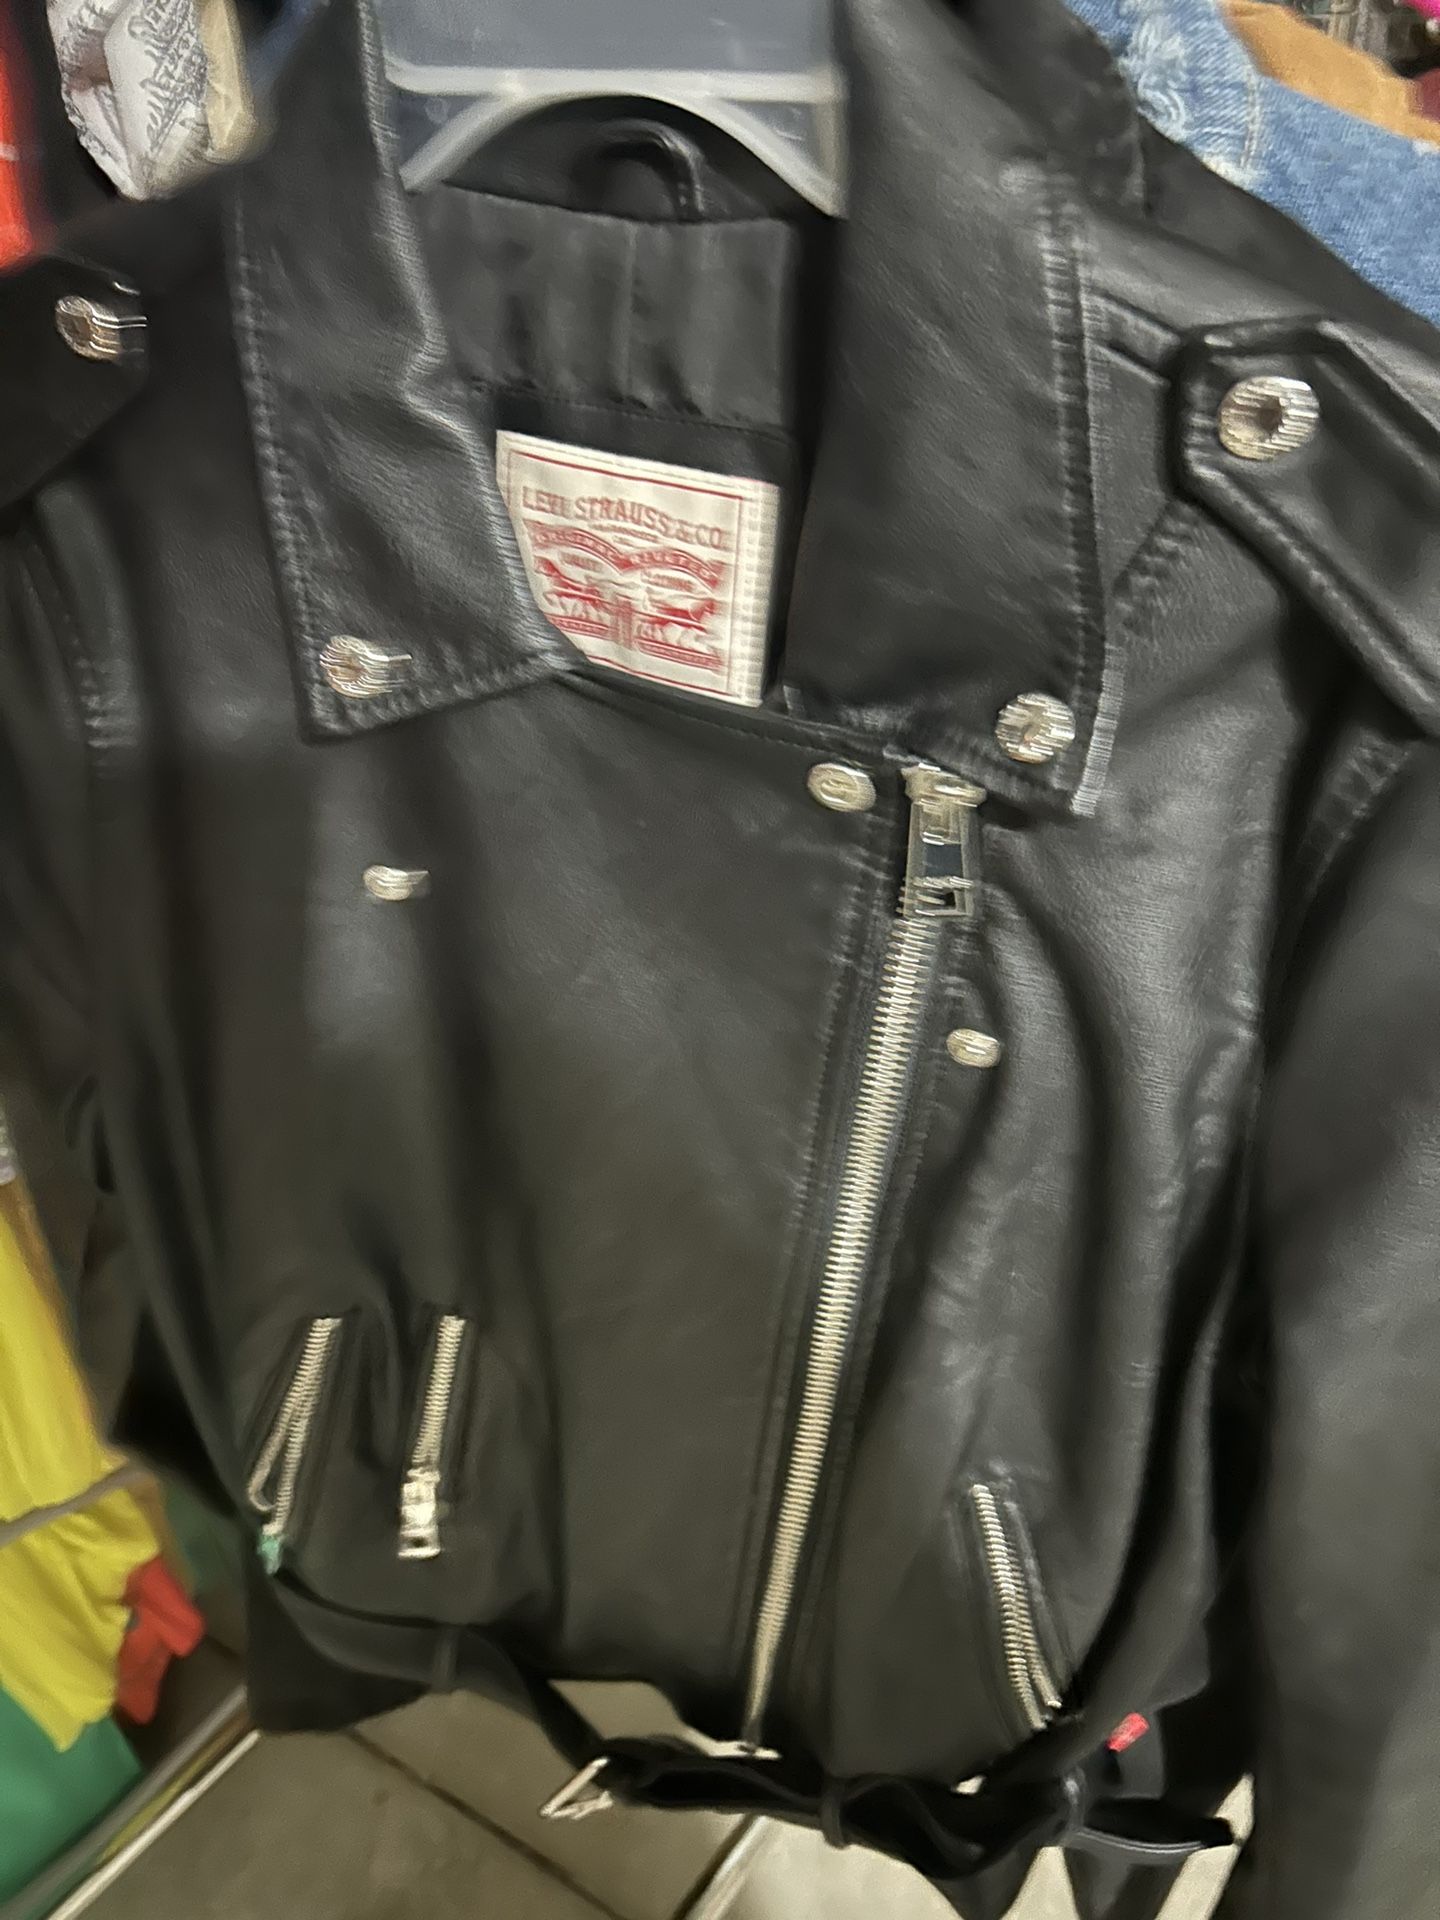 Levi’s Leather Jacket